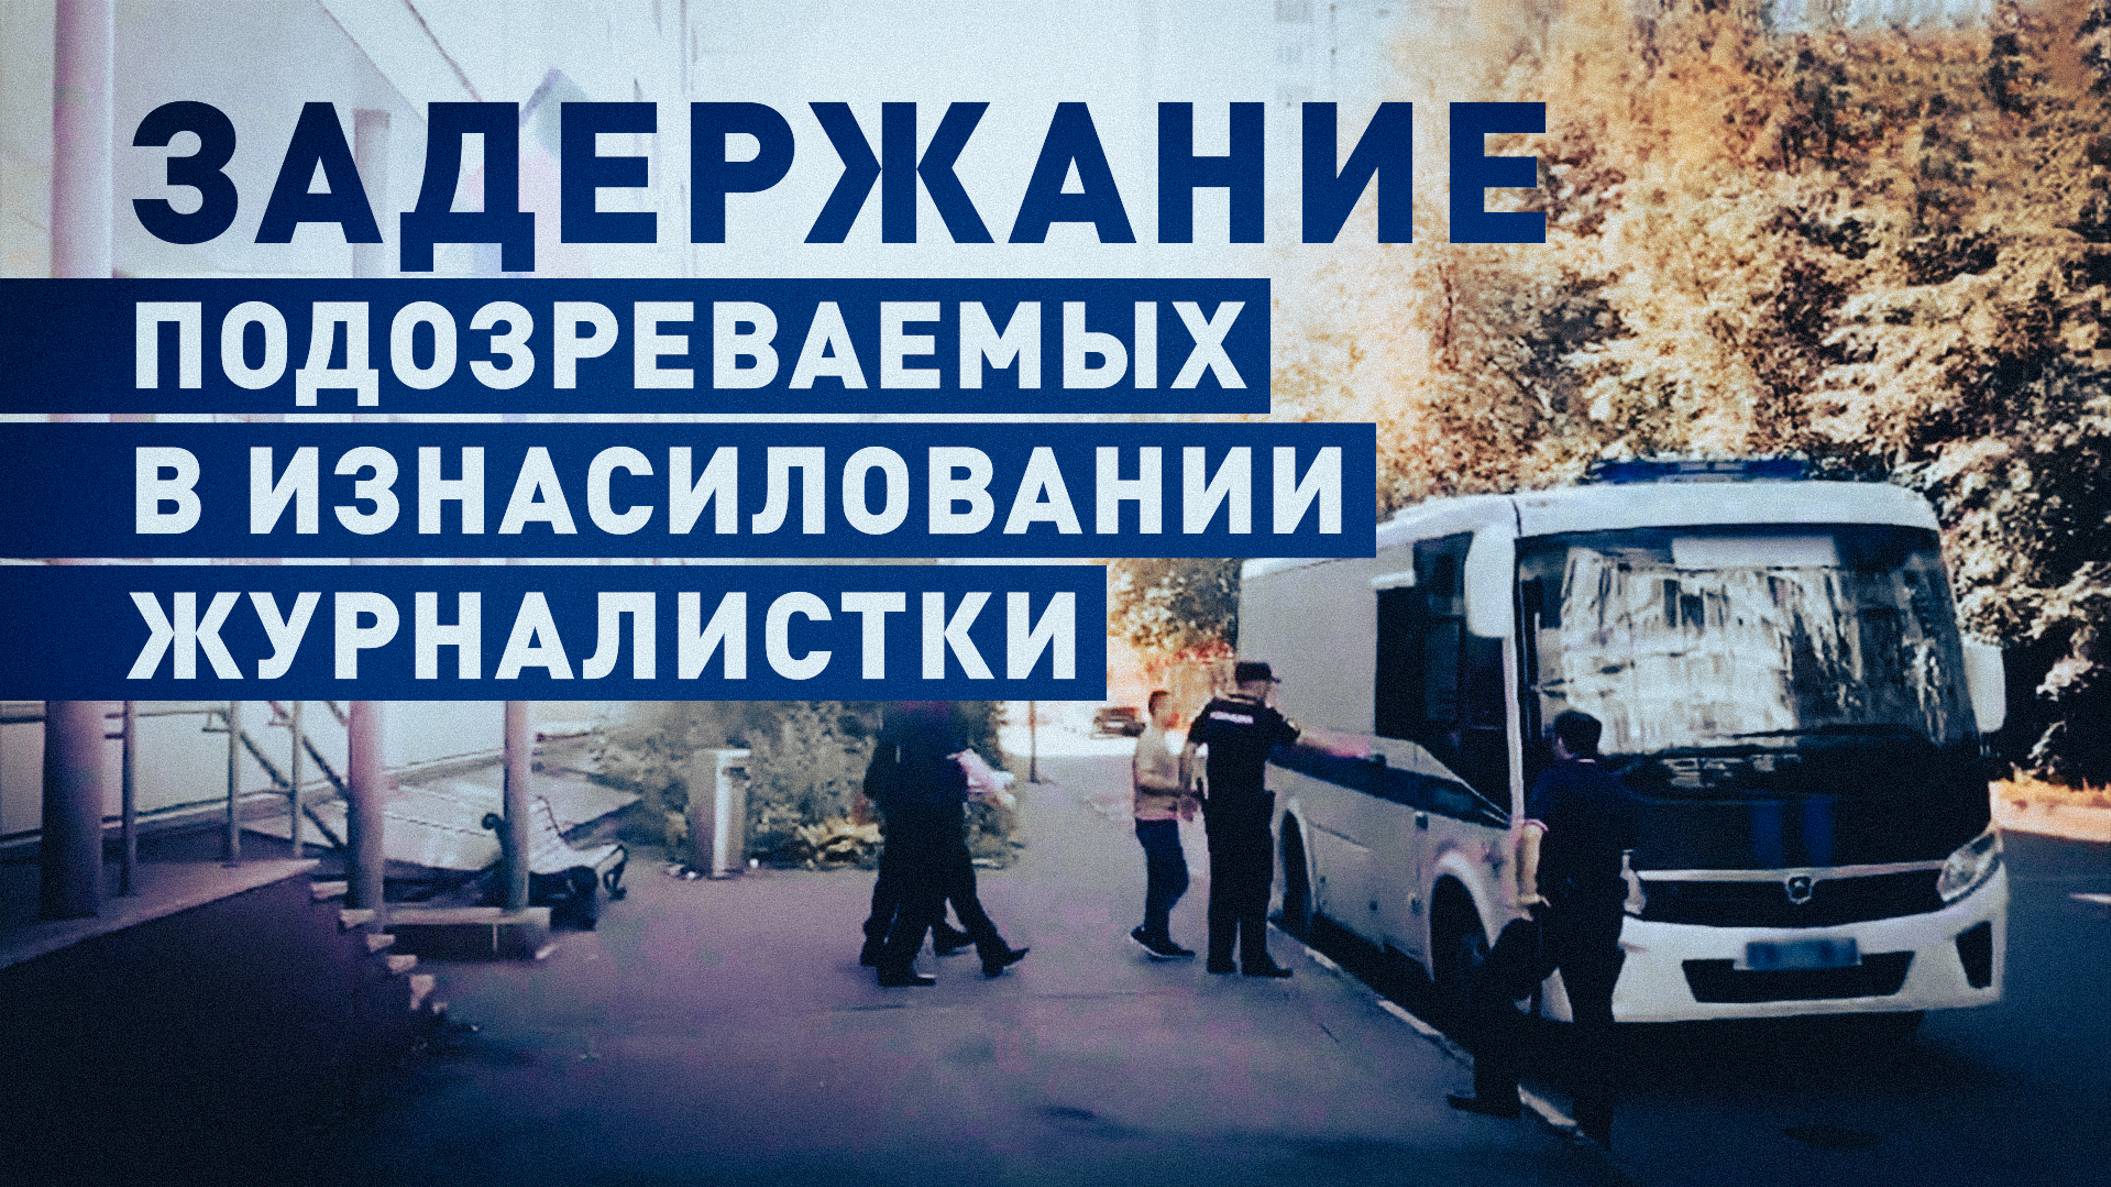 Трое граждан Узбекистана задержаны по подозрению в изнасиловании сотрудницы «Матч-ТВ» в Москве